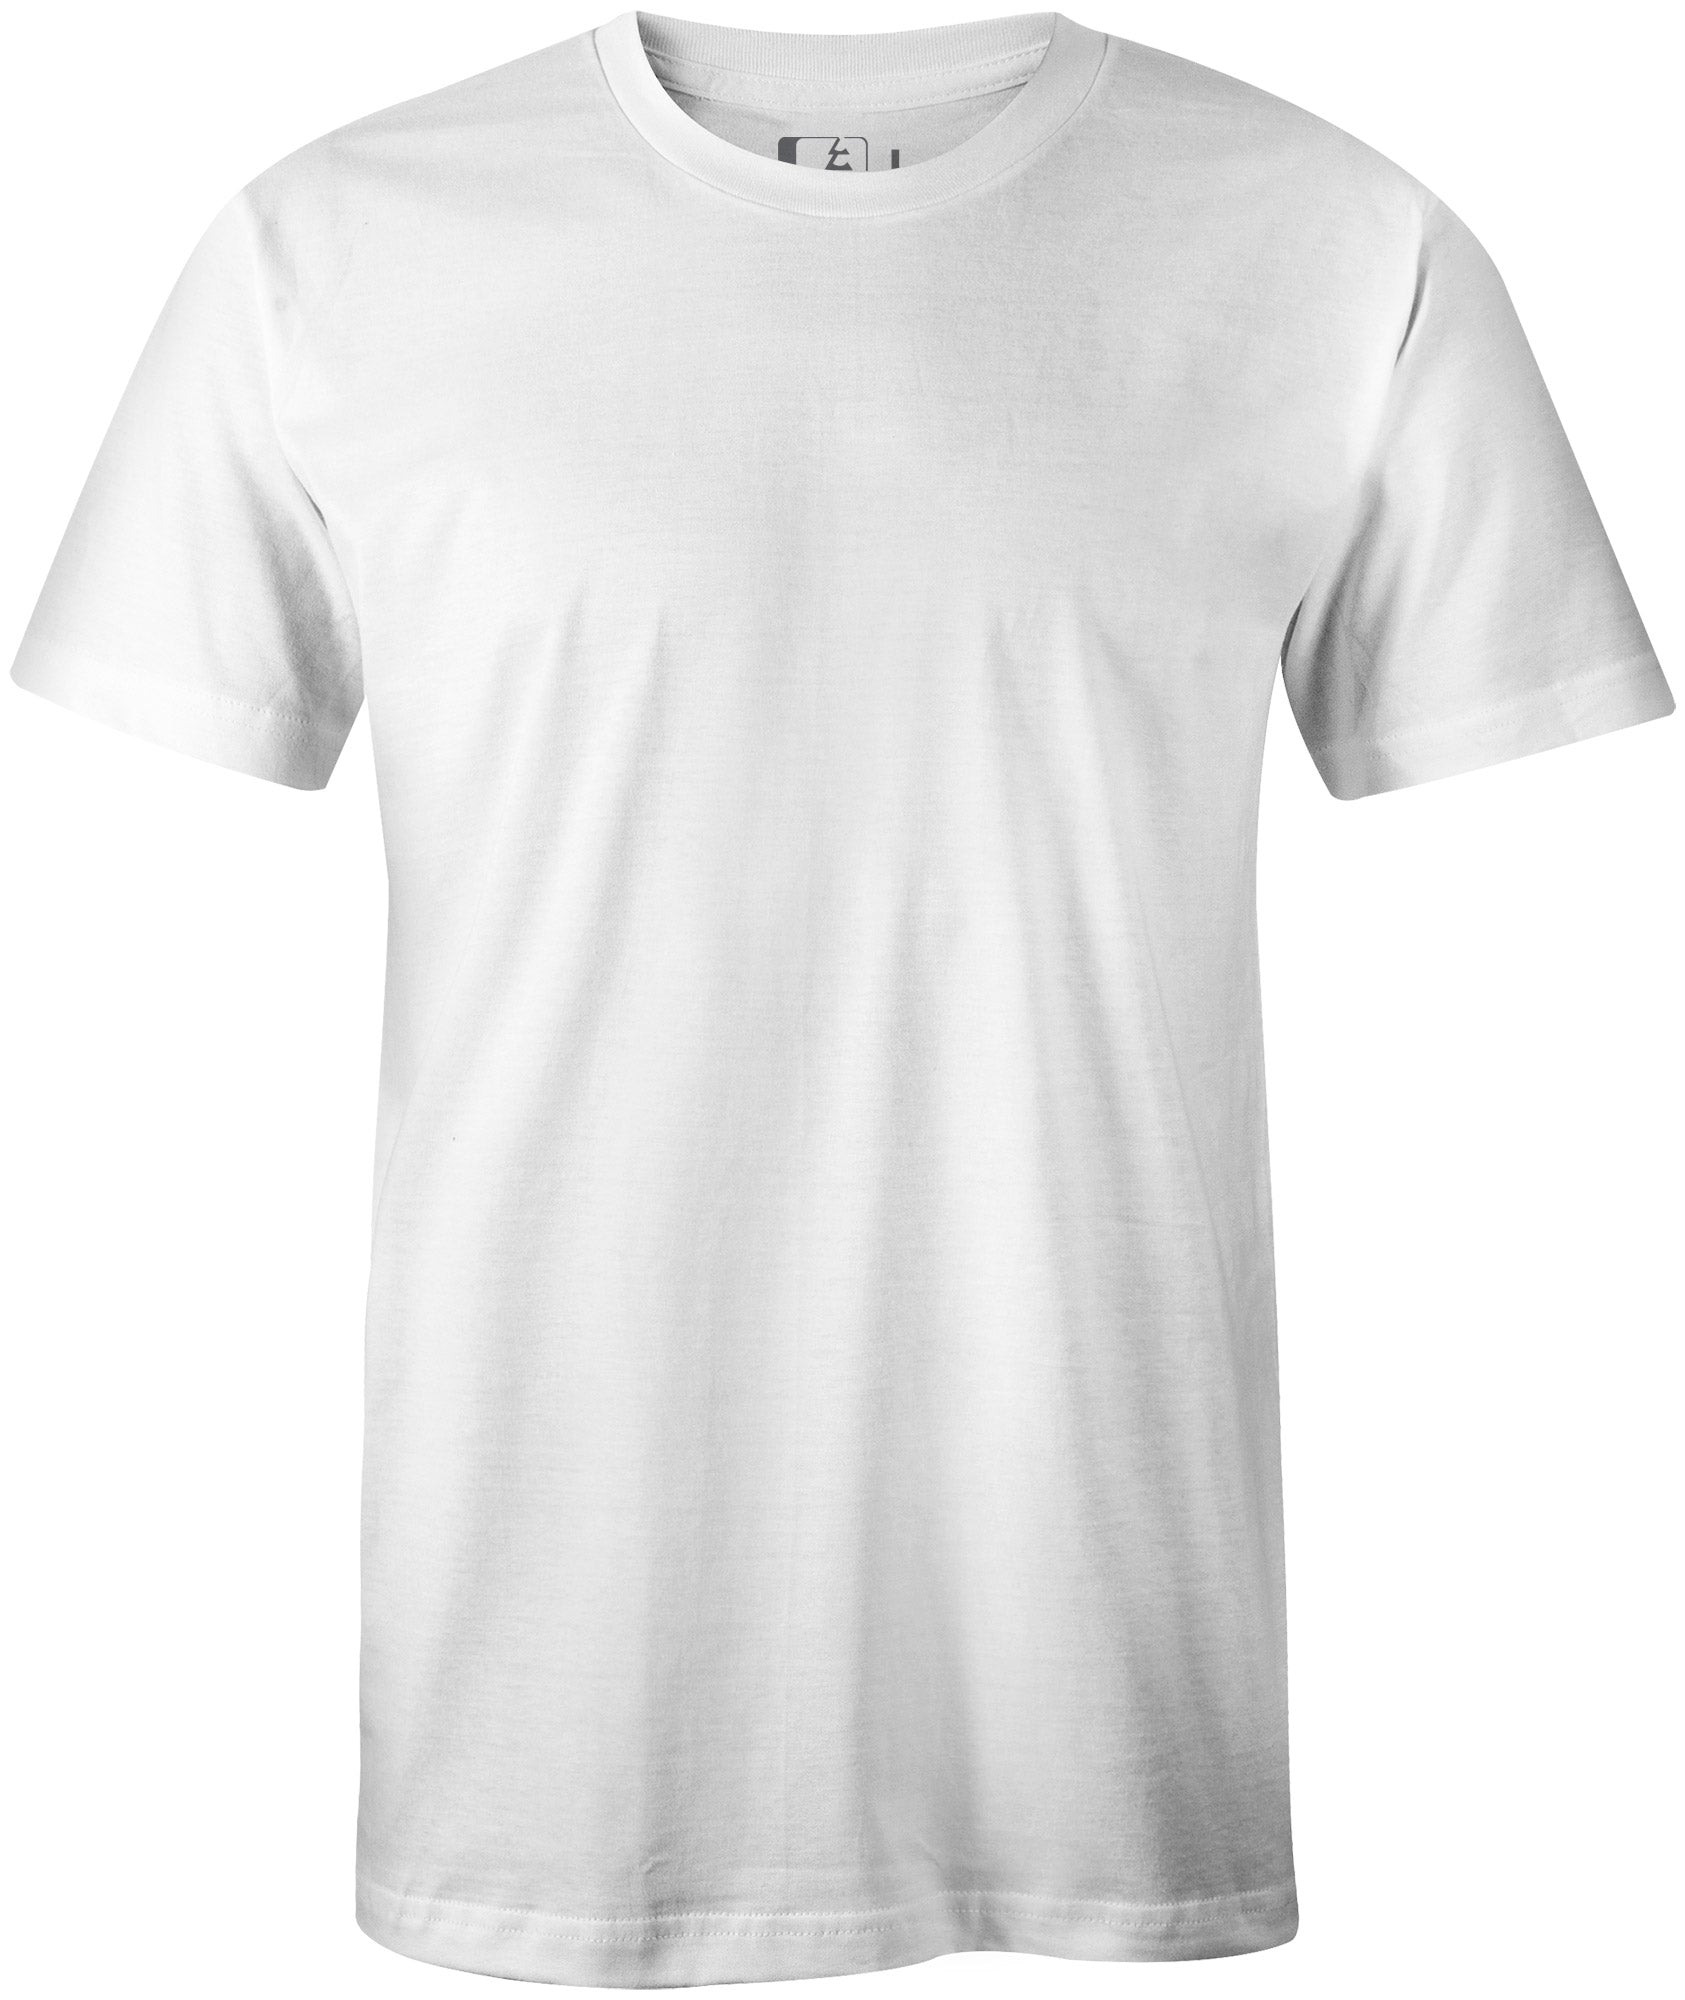 Northwest Riders Premium Blank T-Shirt White LG / White